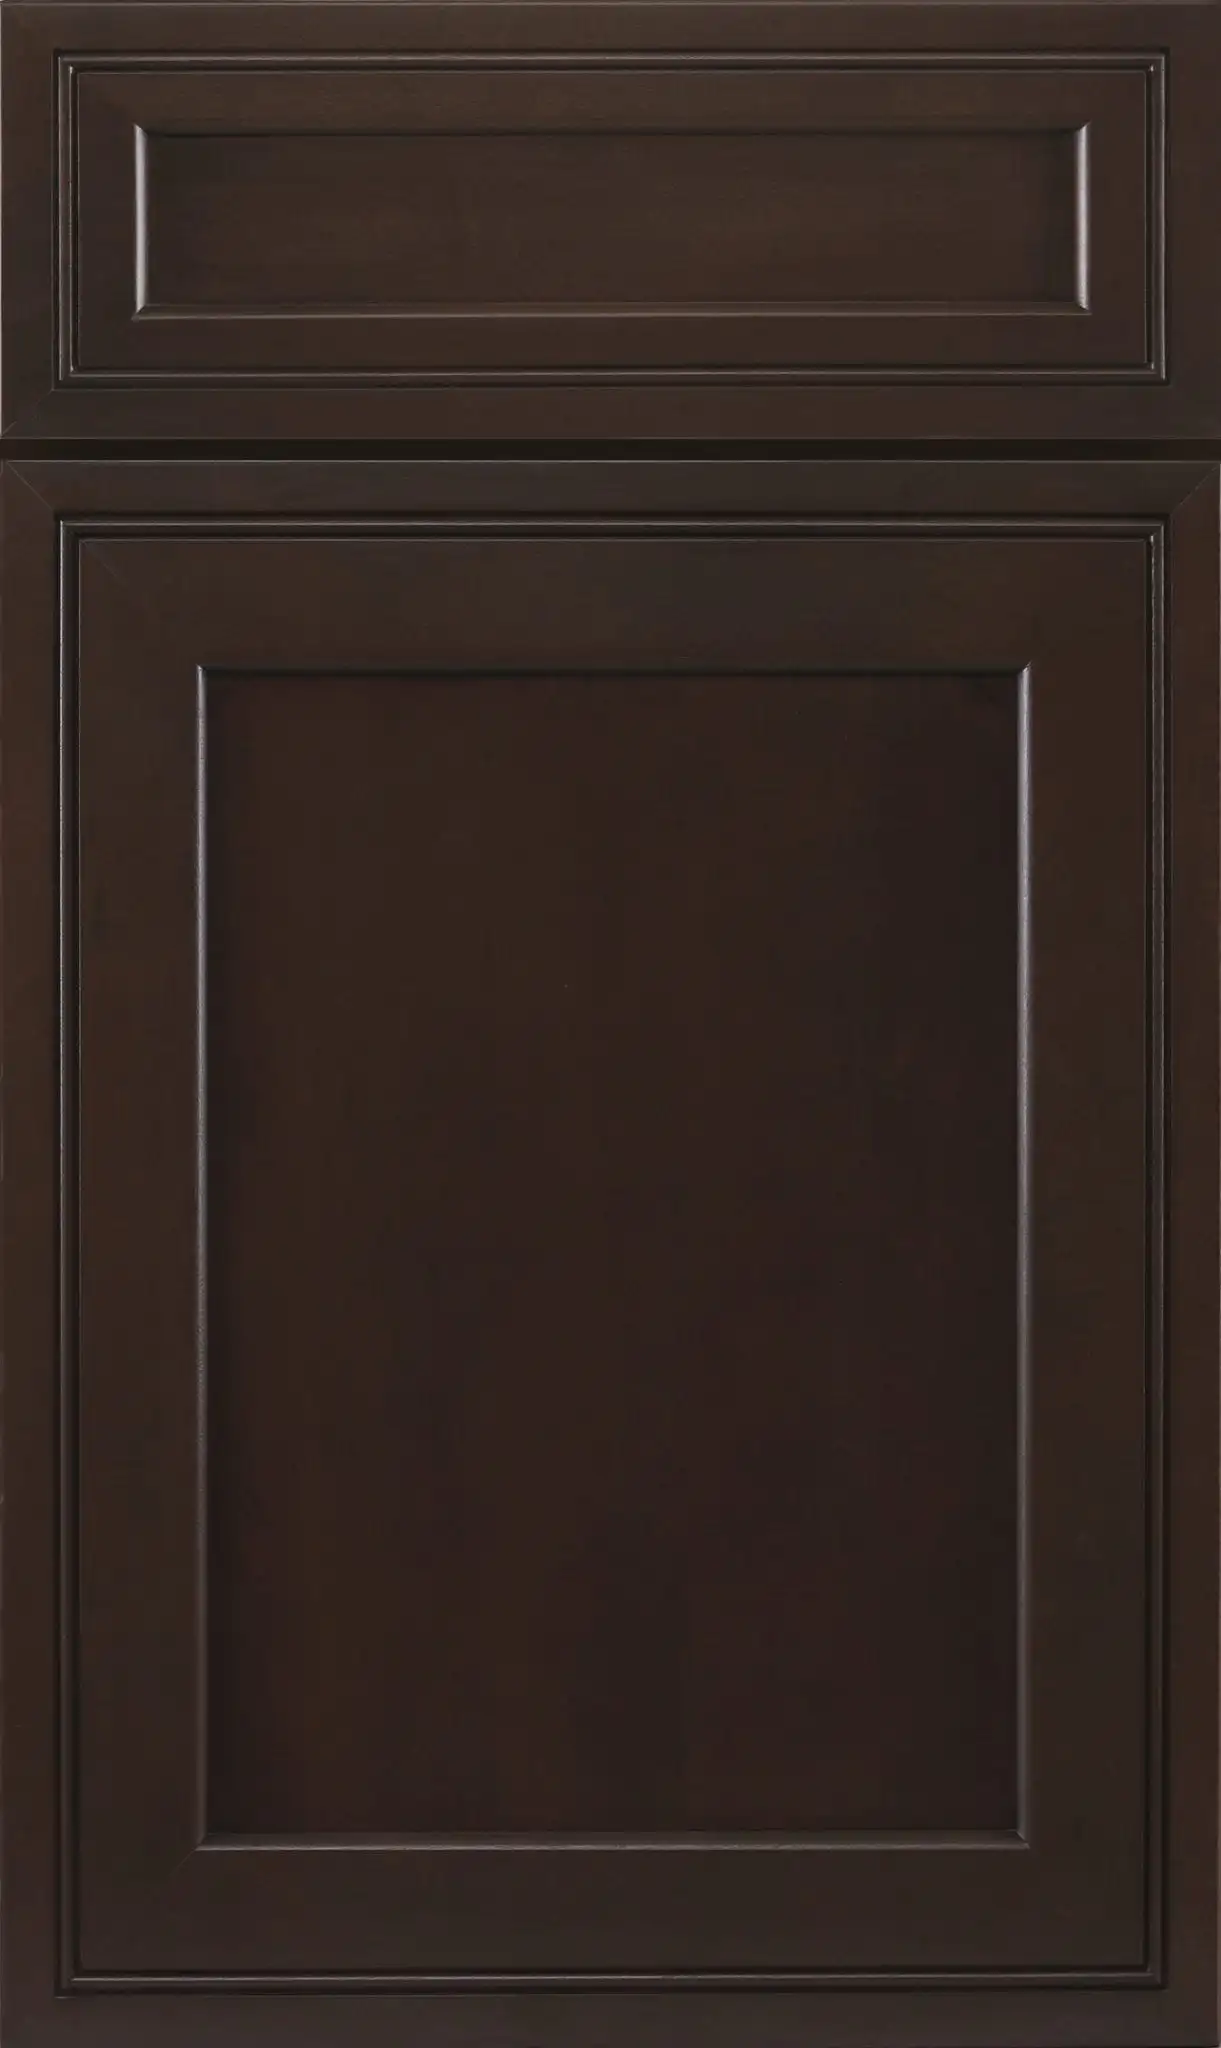 J&K H3 Chestnut Maple kitchen Cabinets Door